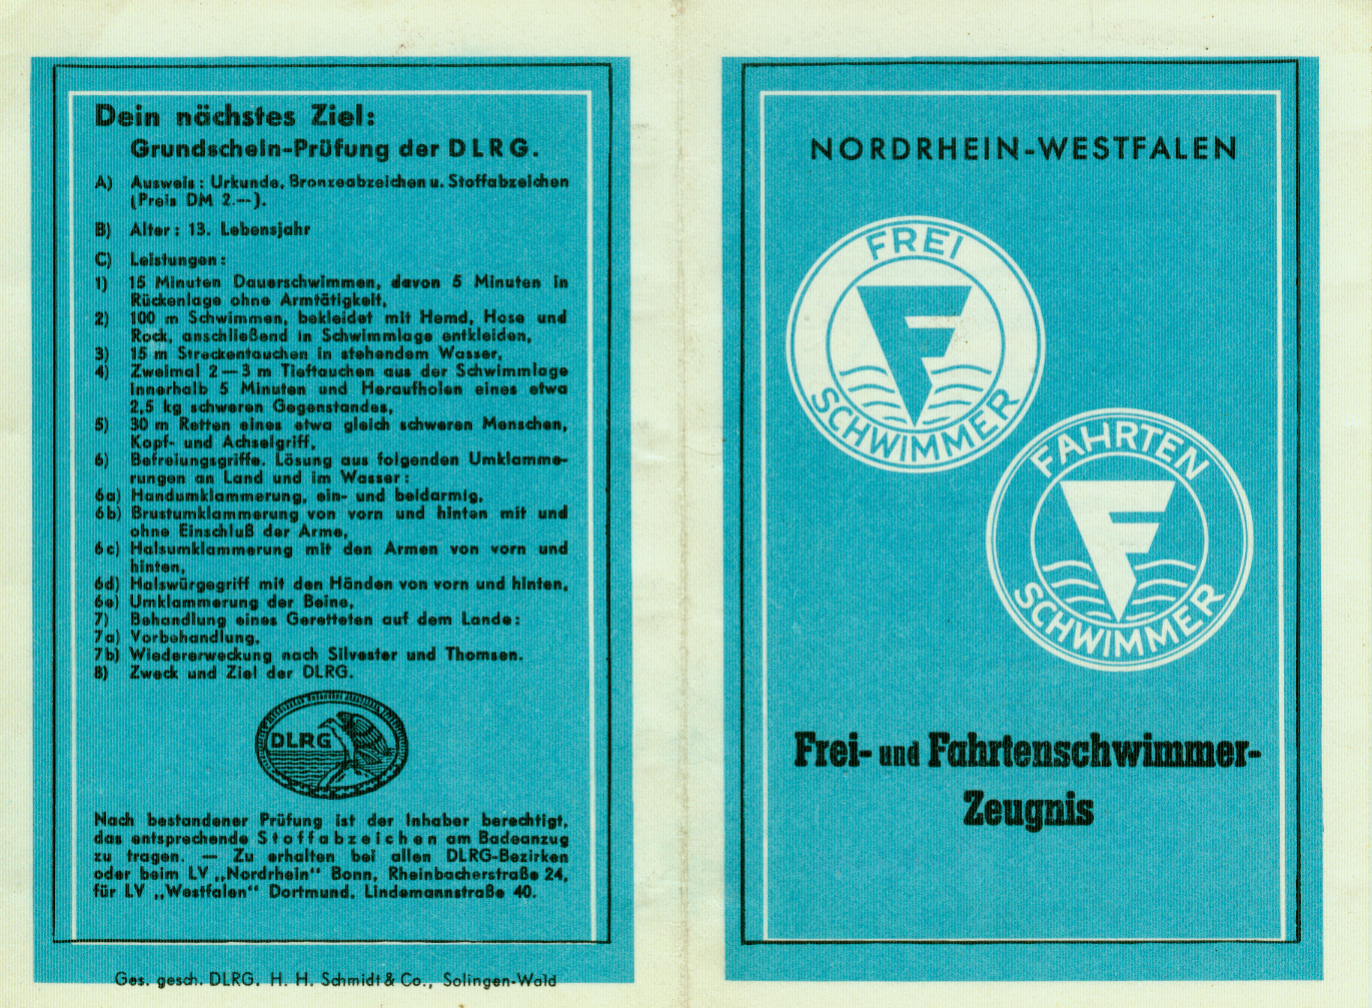 Das Frei- und Fahrtenschwimmer-Zeugnis aus den 1950er Jahren. Mit freundlicher Genehmigung von Prof. Hans-Peter Fries.